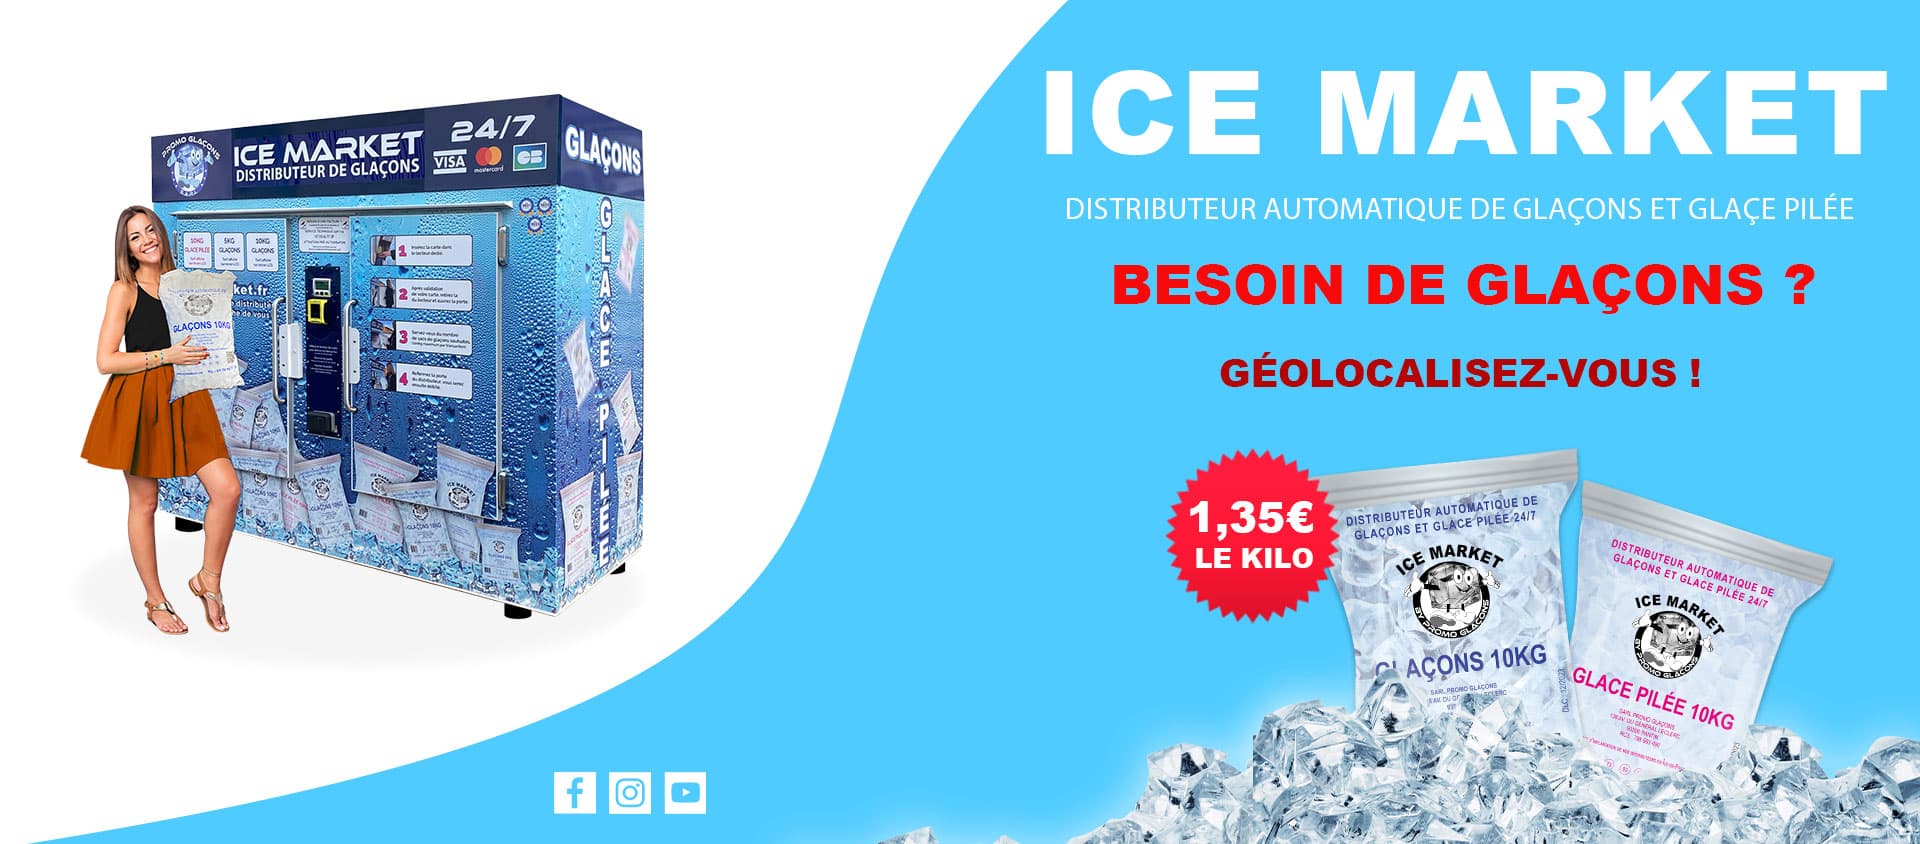 Glaçons et glace pilée Paris Porte de la Villette dès 6,25€! ICEMARKET